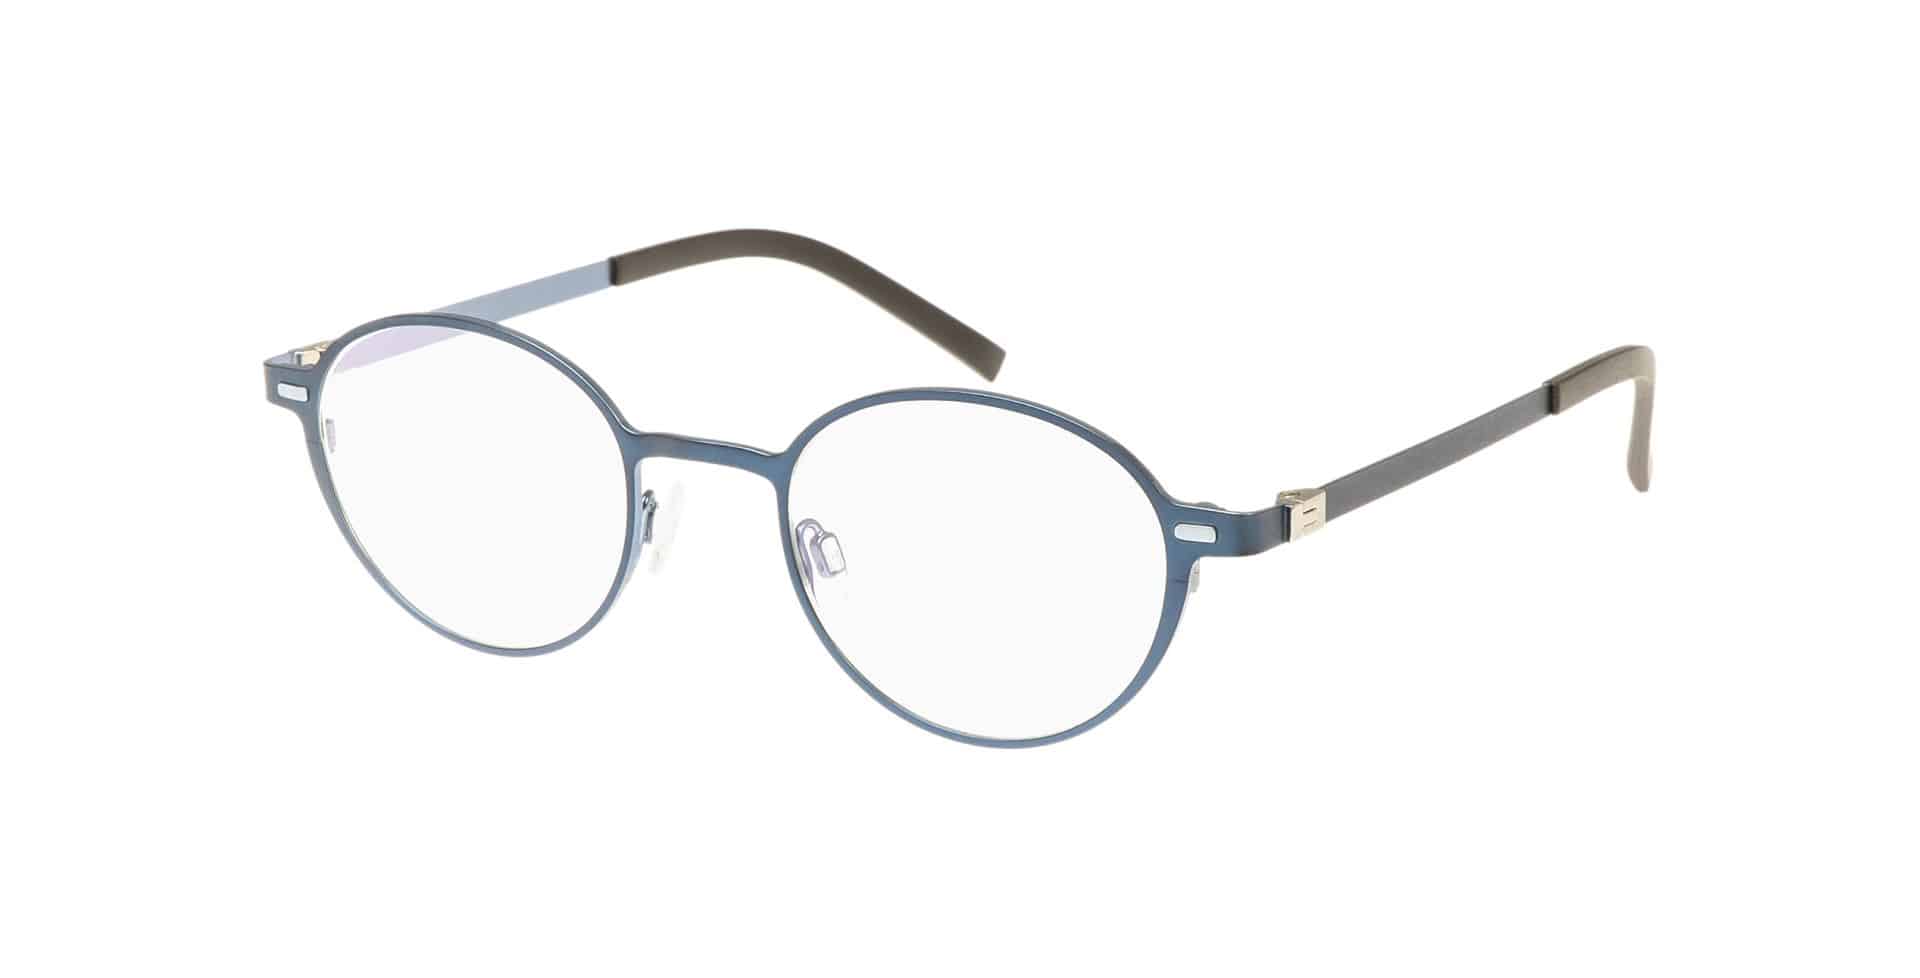 Brillen für schmale Gesichter PARVUM Modell 3304 Farbe 003